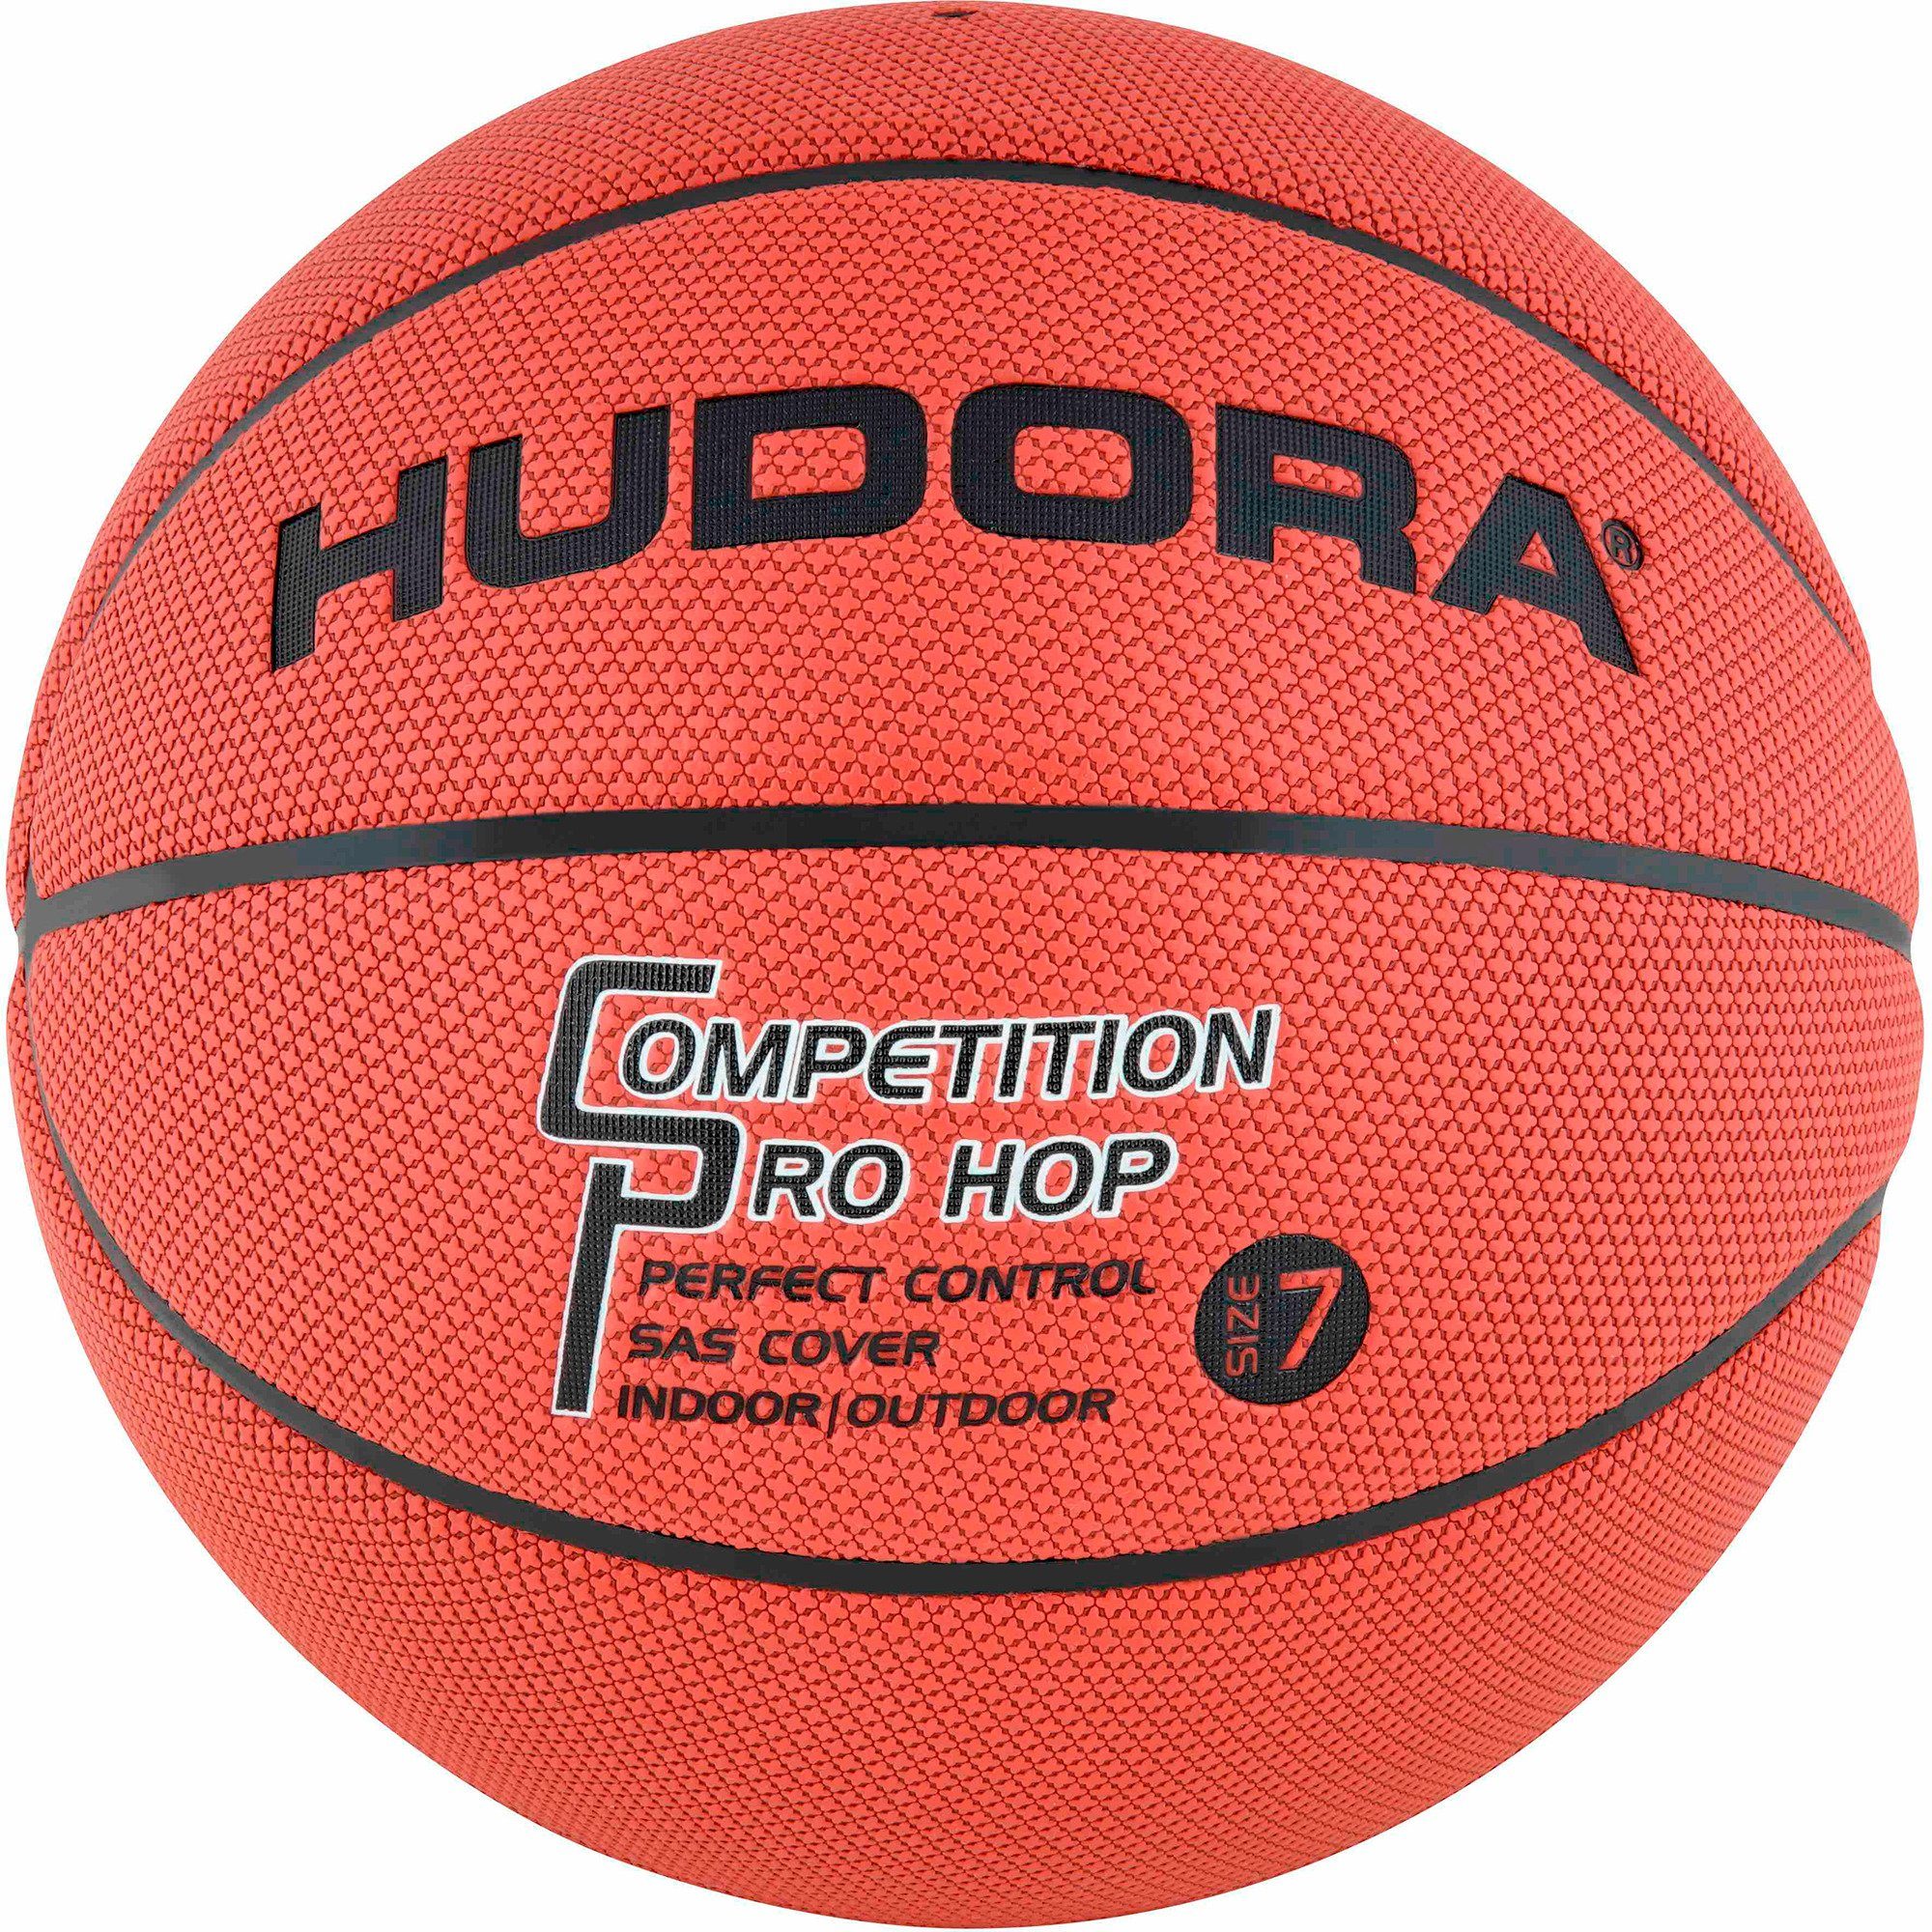 Hudora Basketball HUDORA Pro Hop, Competition Gr.7 Basketball